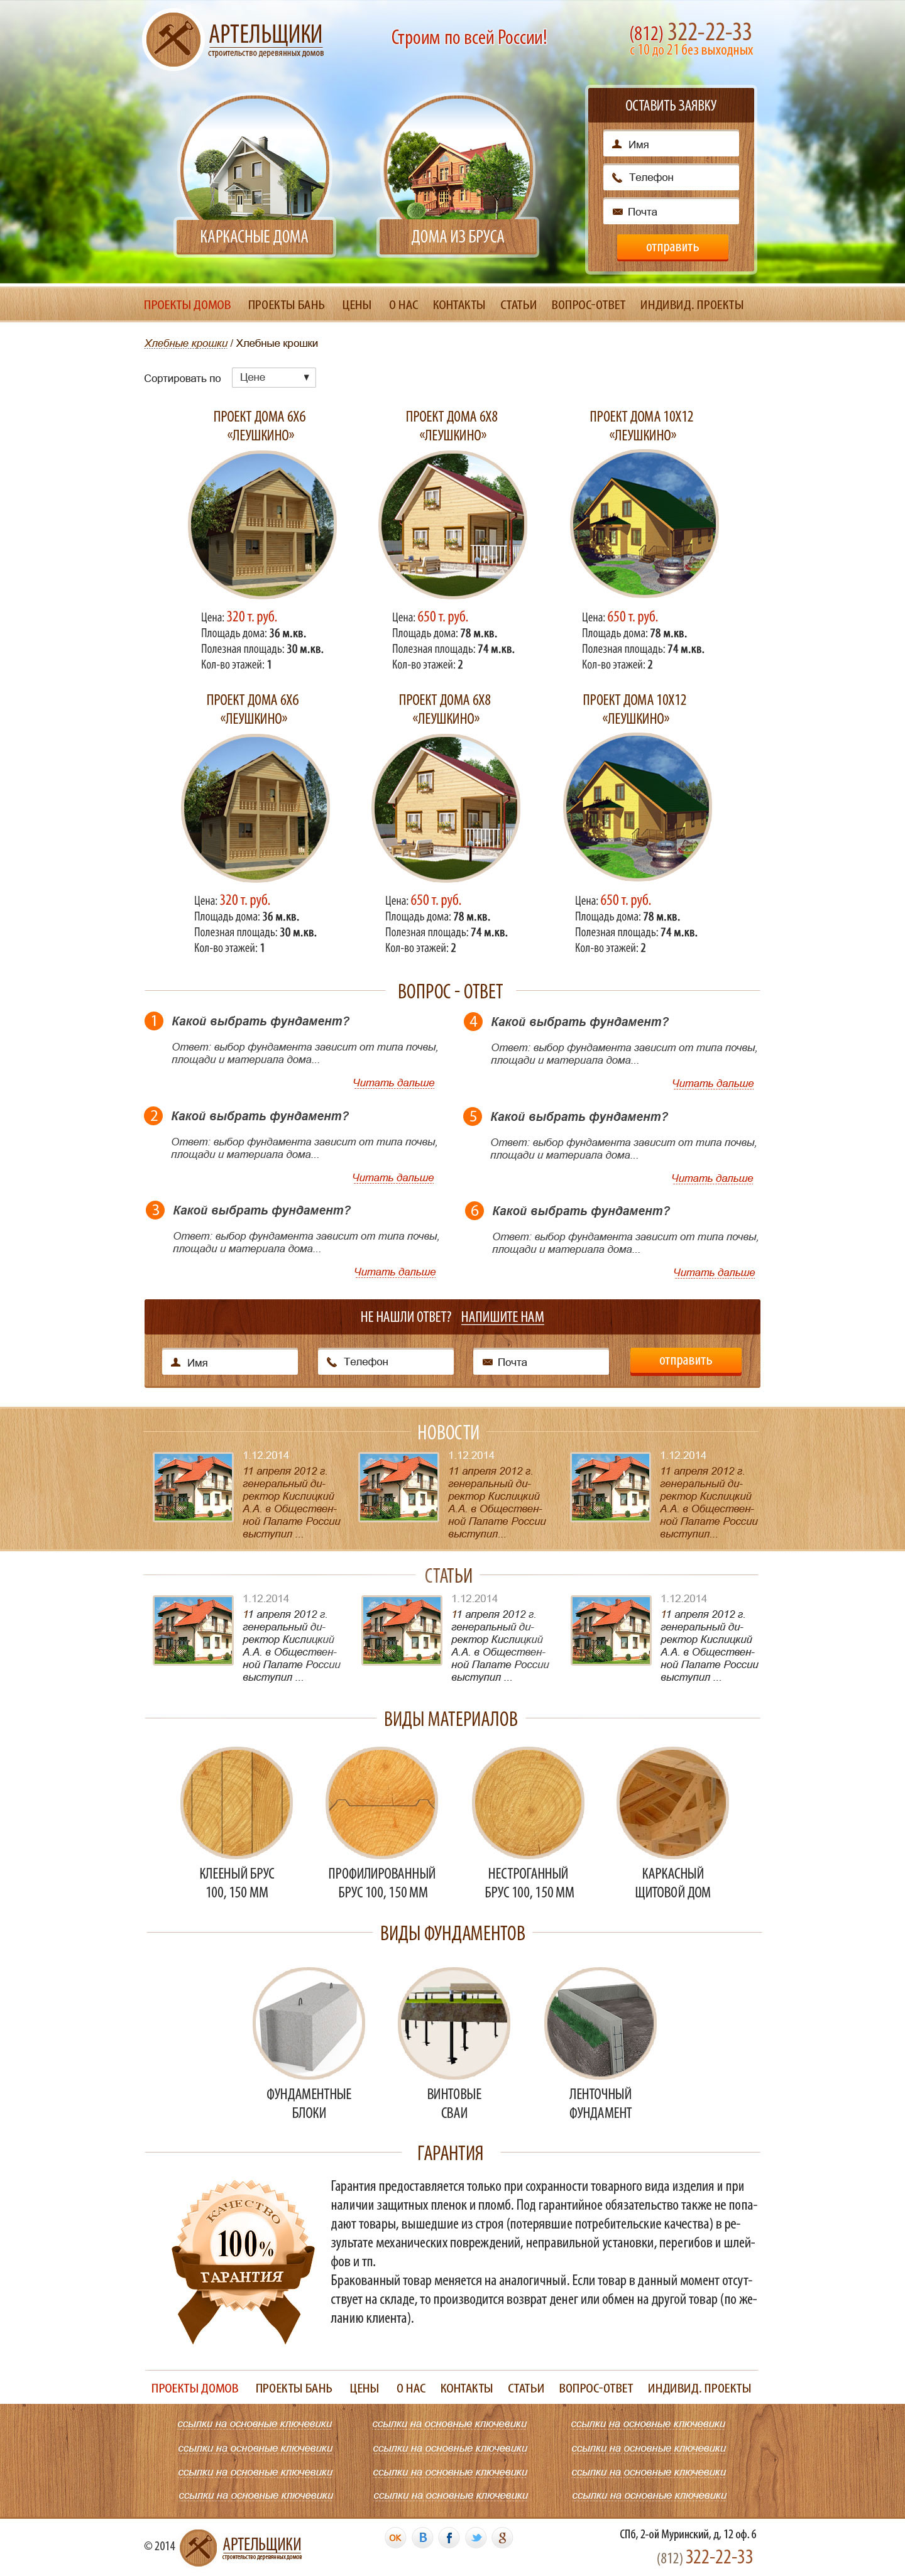 Дизайн сайта Артельщики для студии Веб-садовник